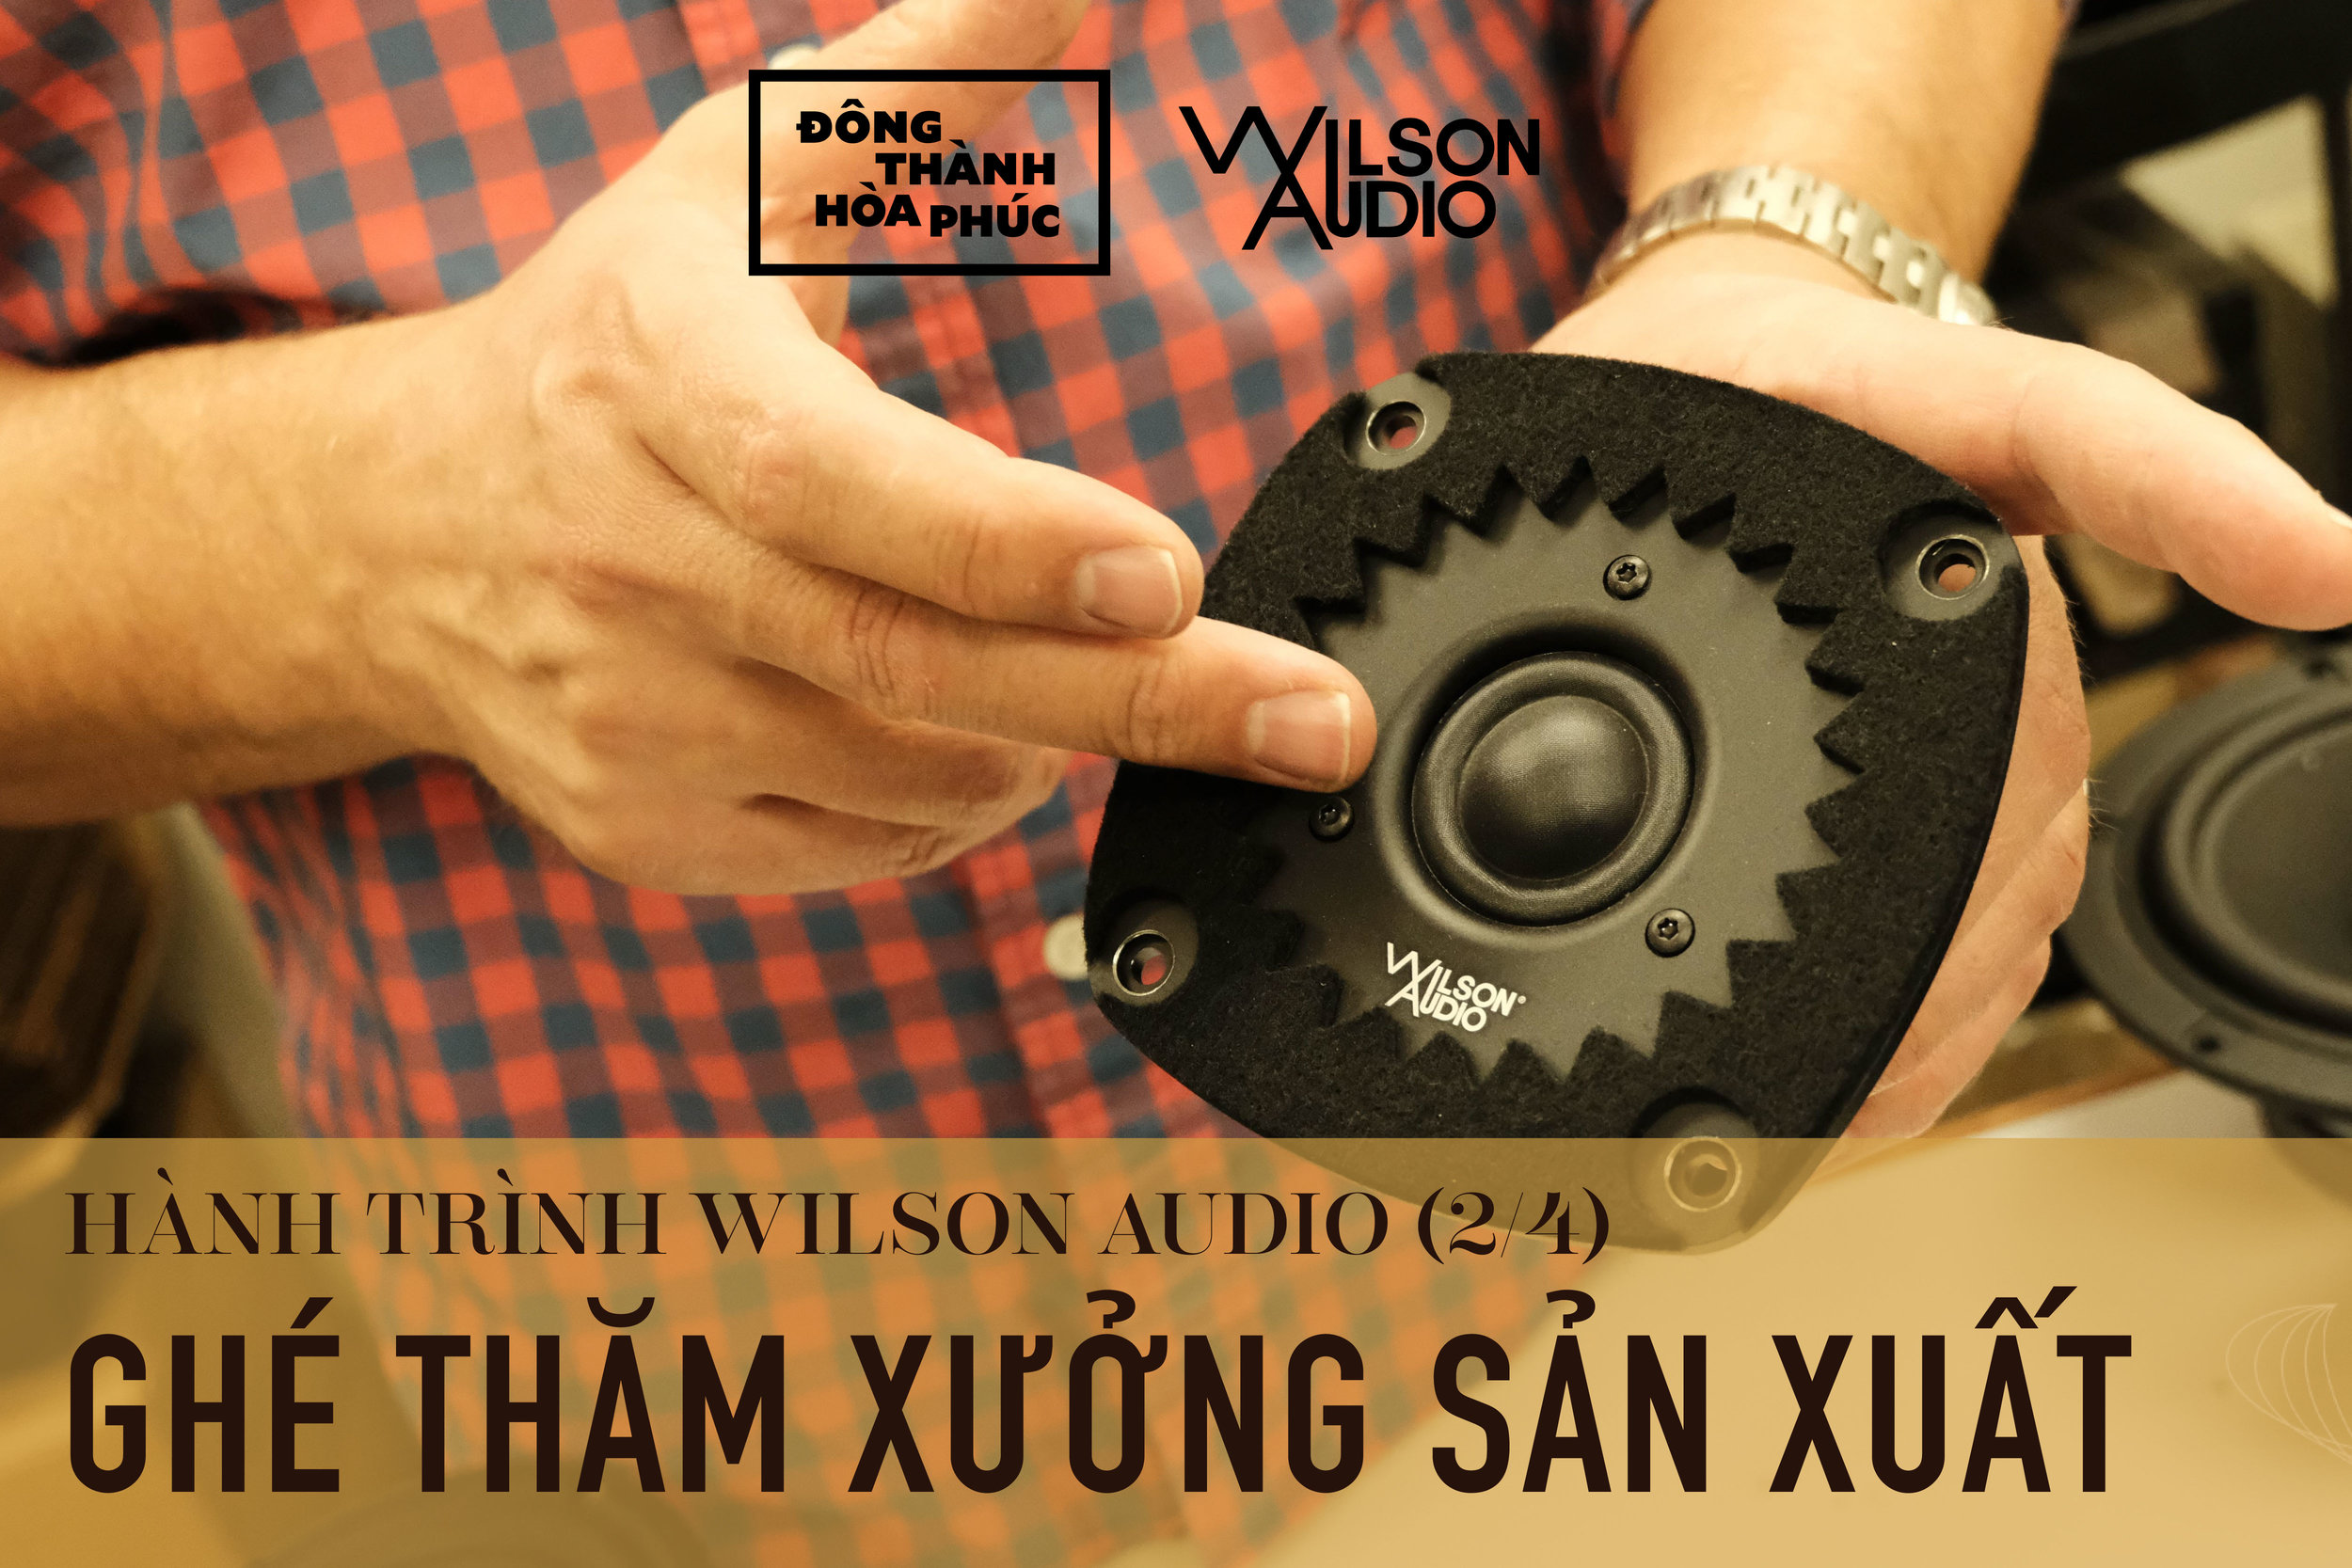 Wilson Audio Tour Đông Thành - Hòa Phúc